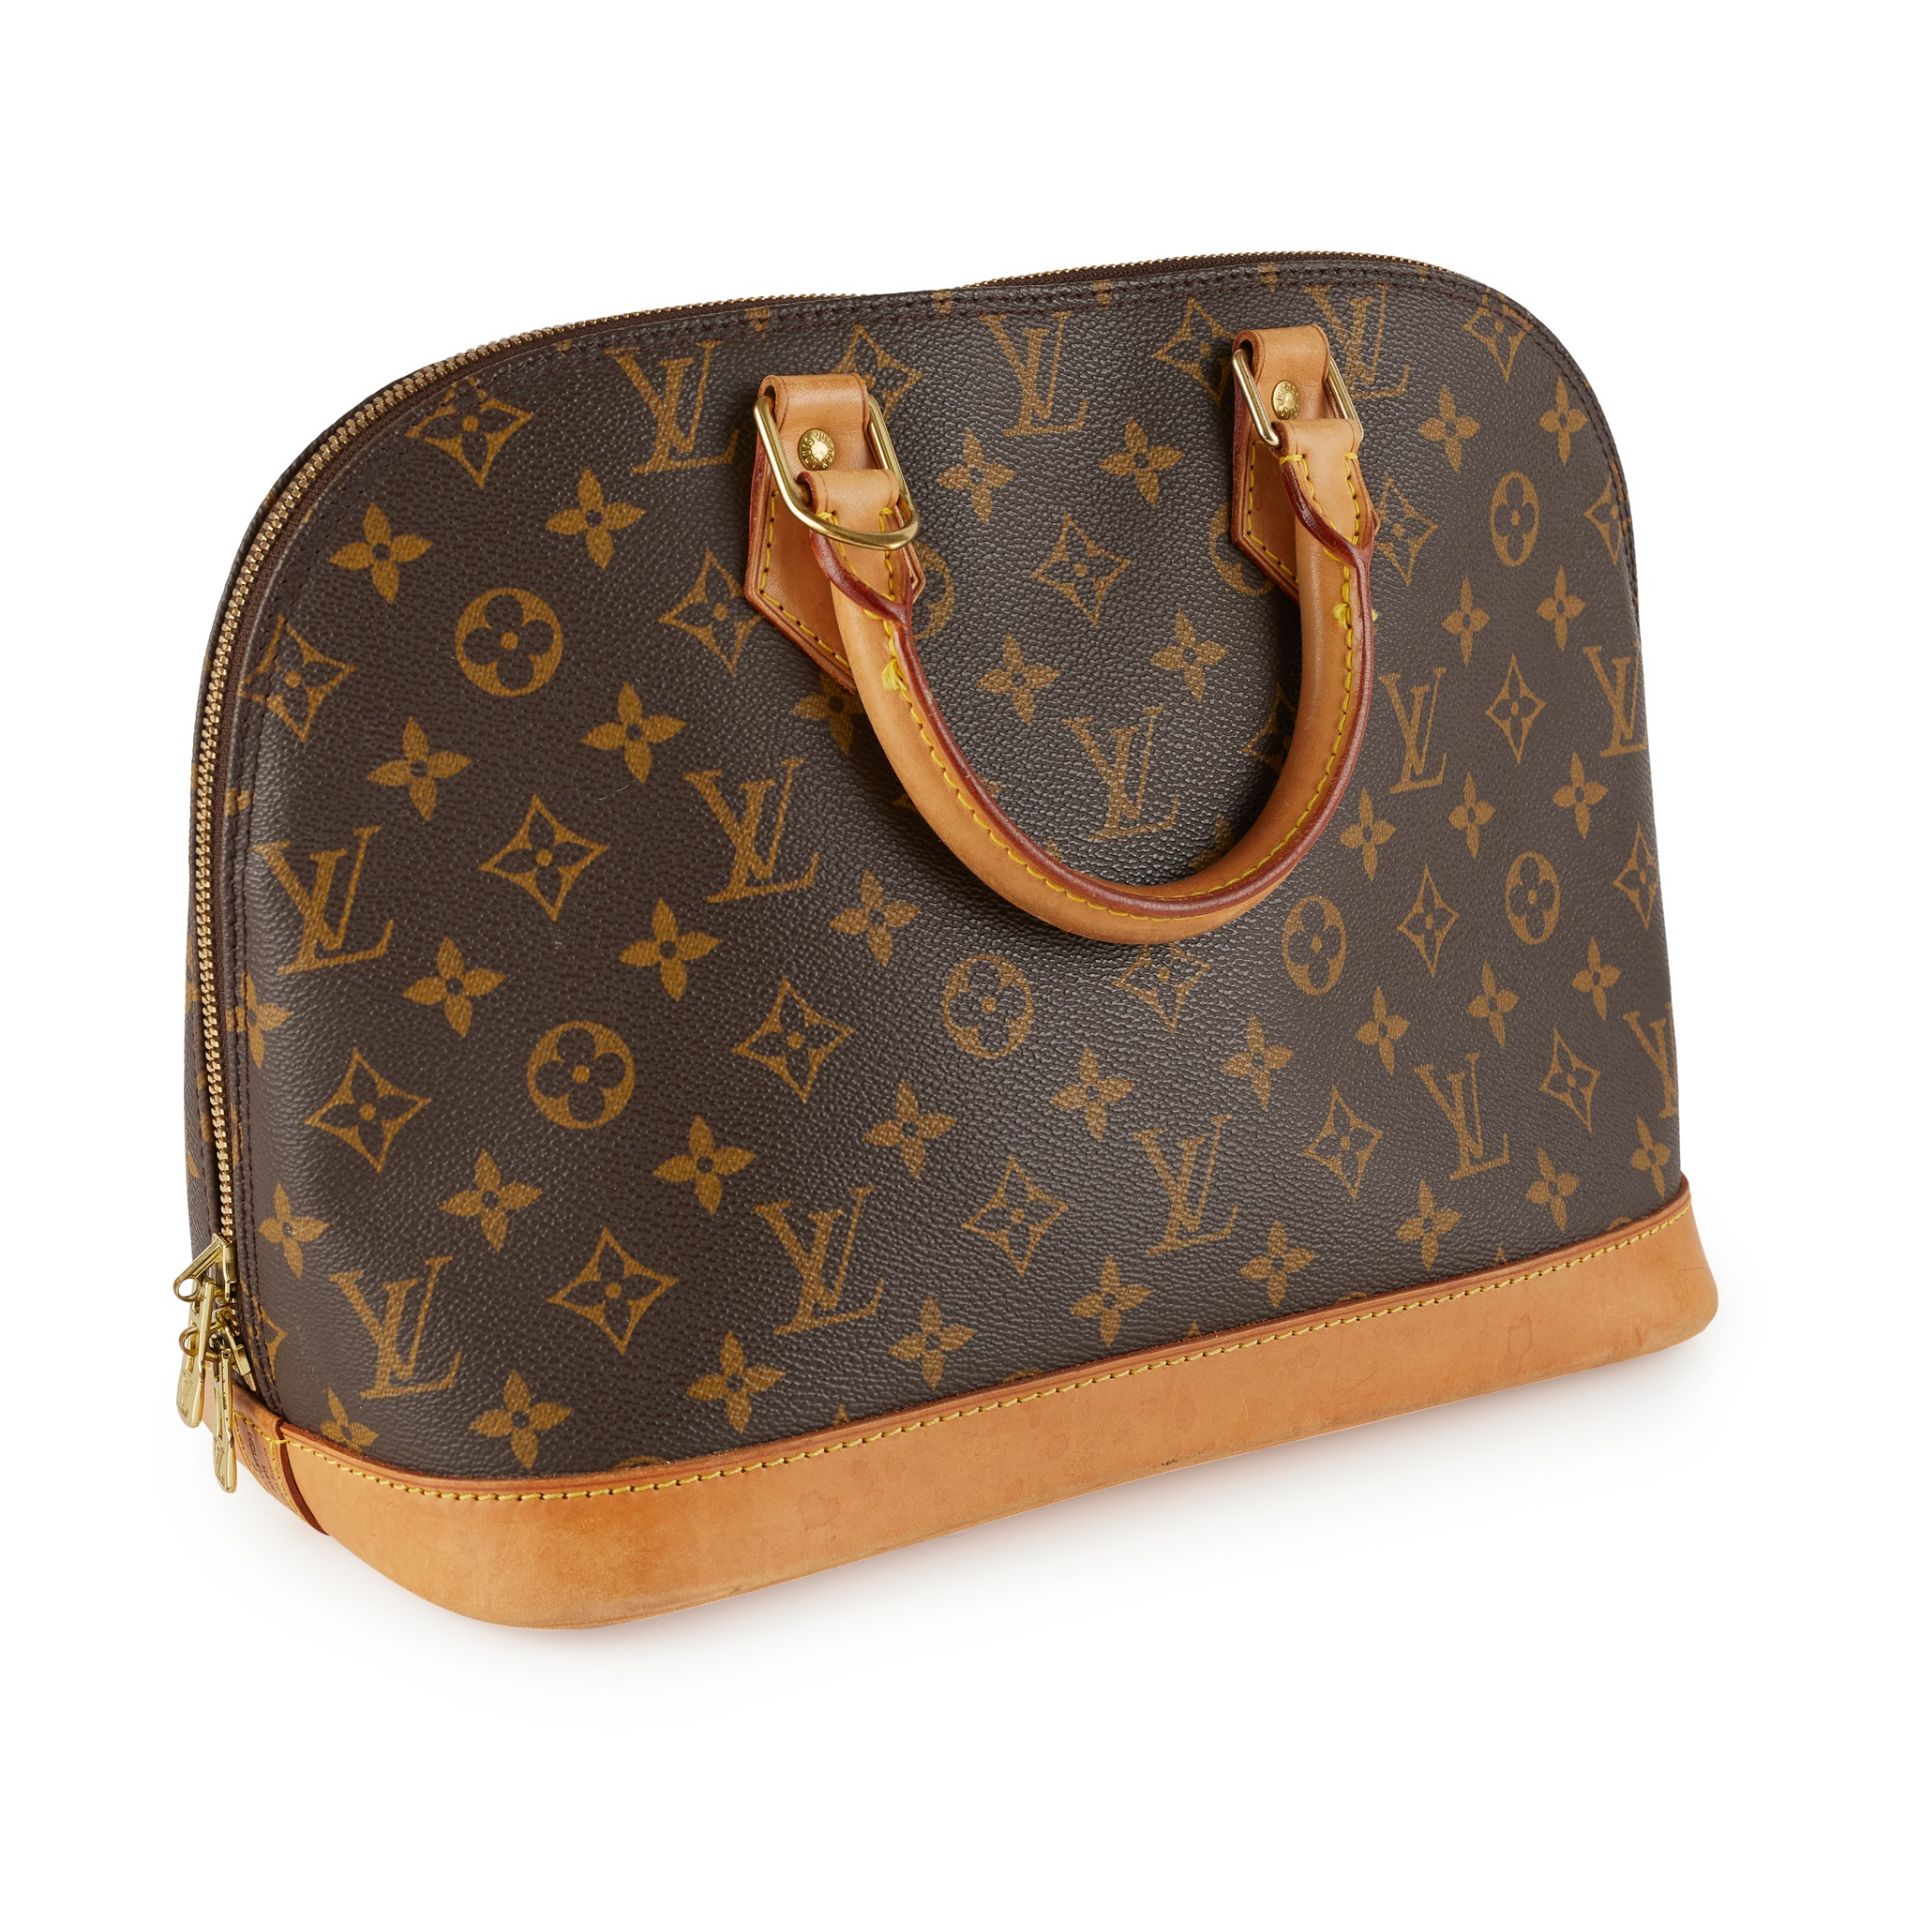 An 'Alma' handbag, Louis Vuitton